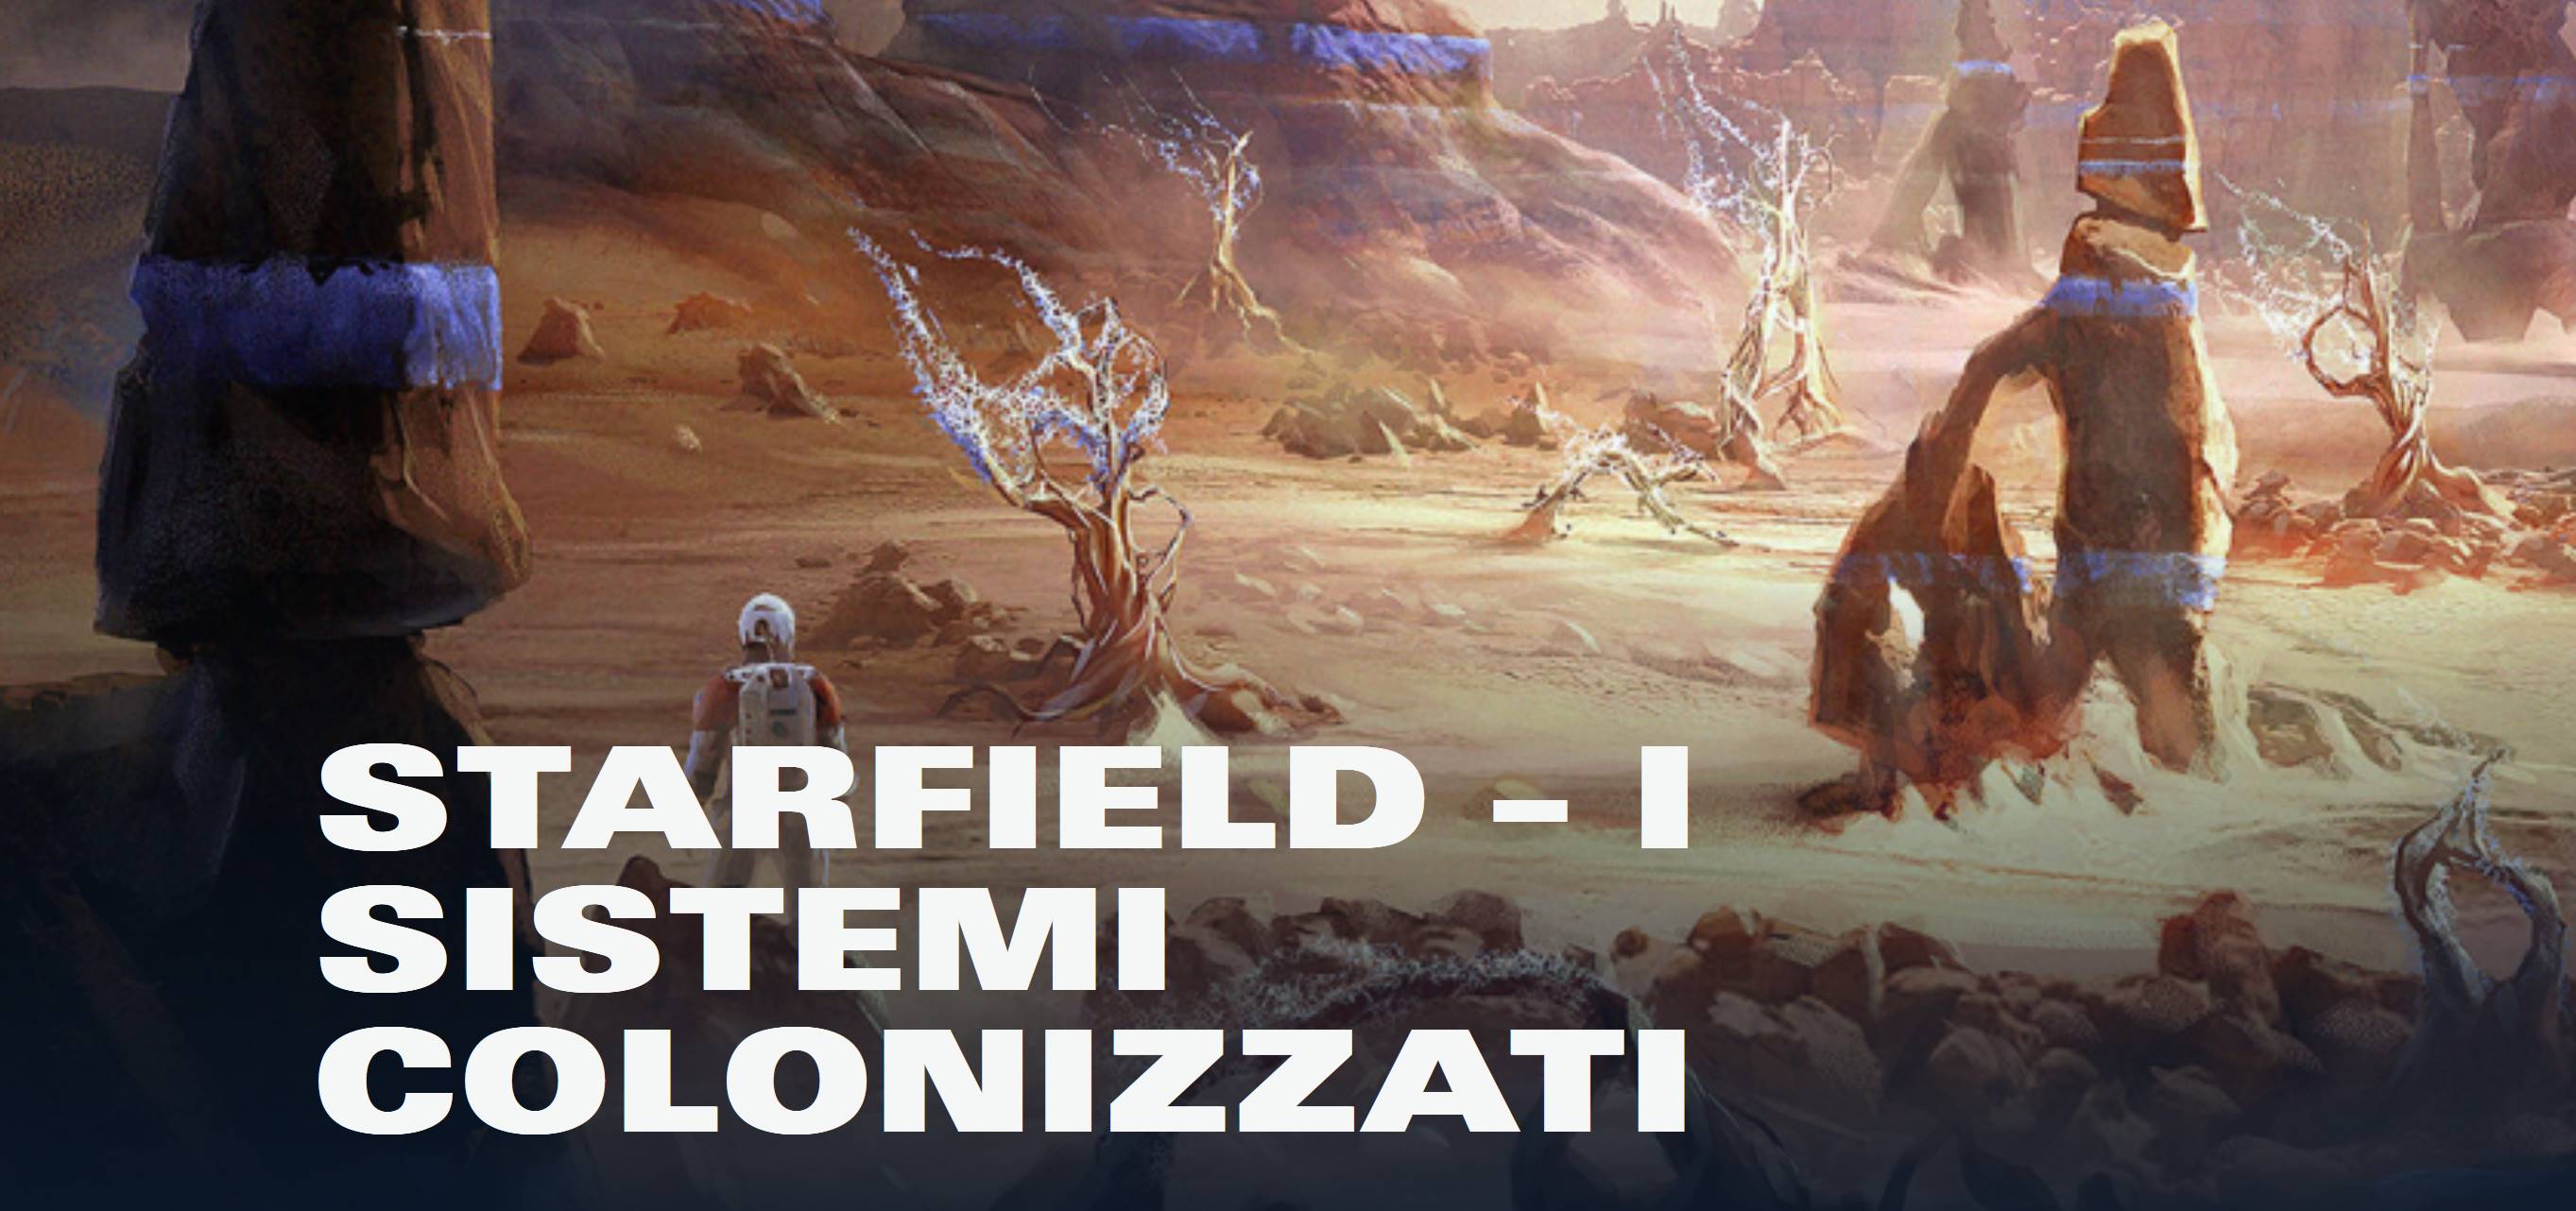 I Sistemi Colonizzati: un’antologia animata di Starfield